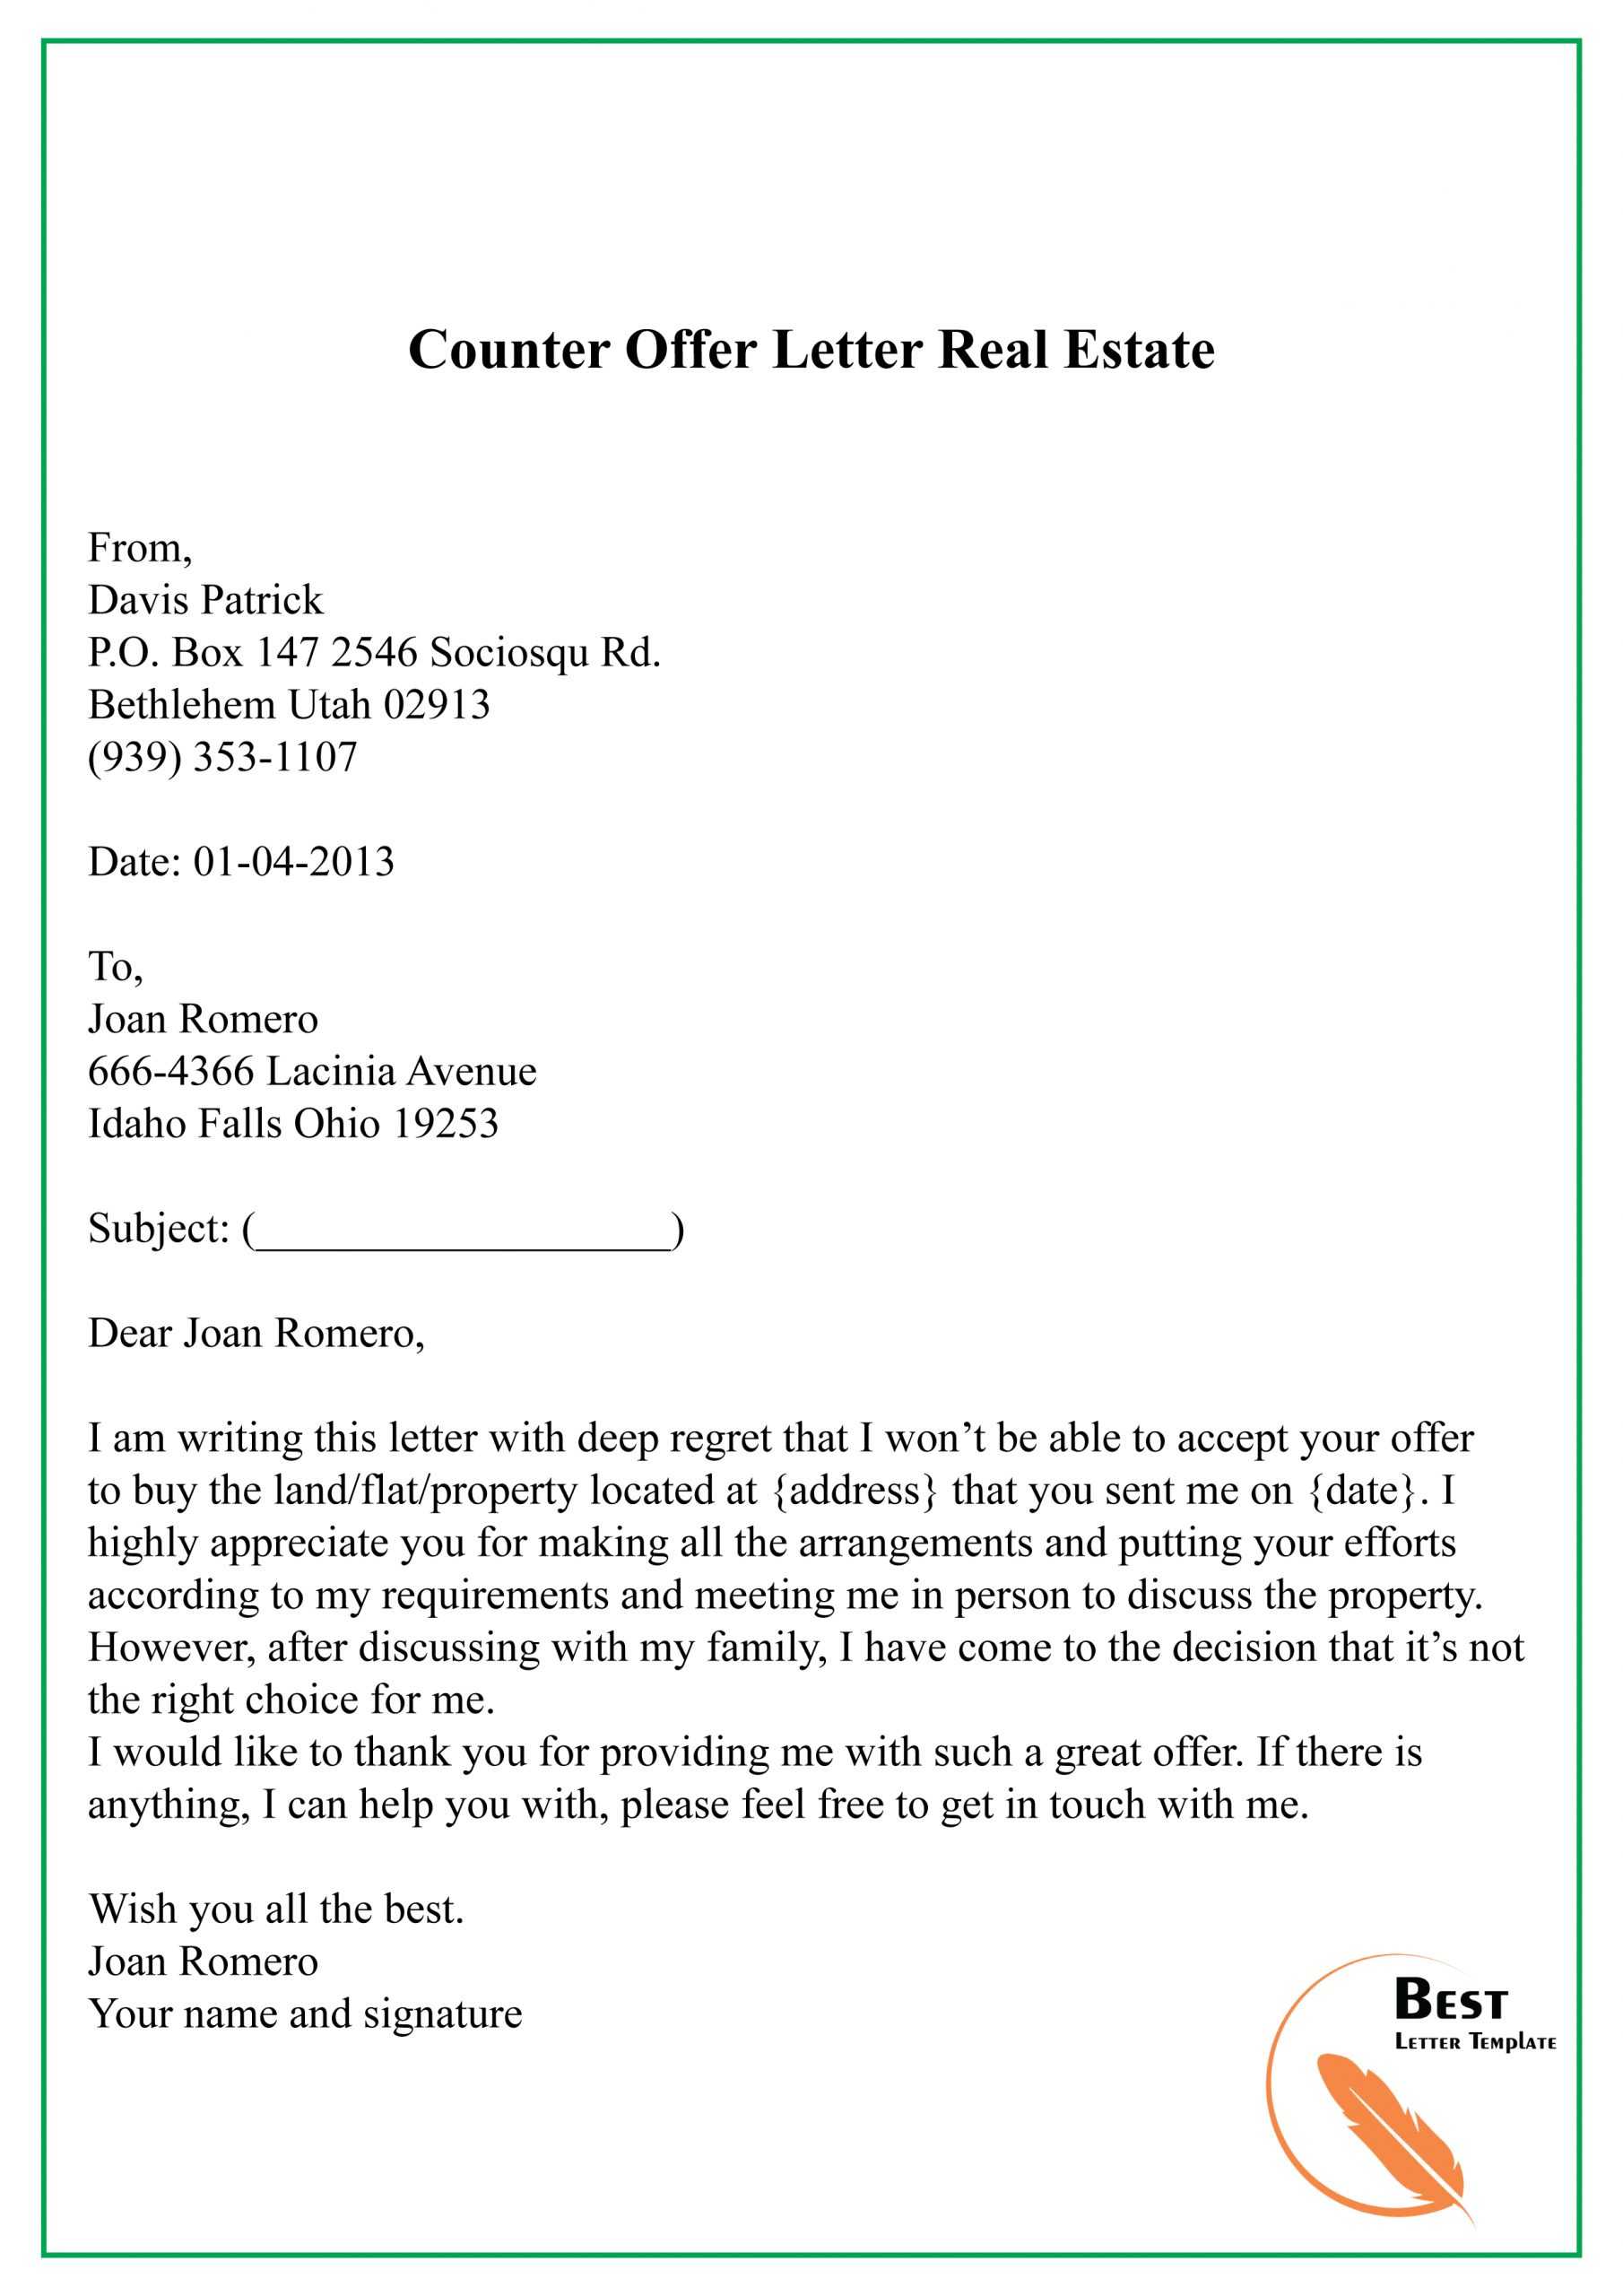 Counter Offer Letter | Templatescoverletters With Regard To Counter Offer Letter Template